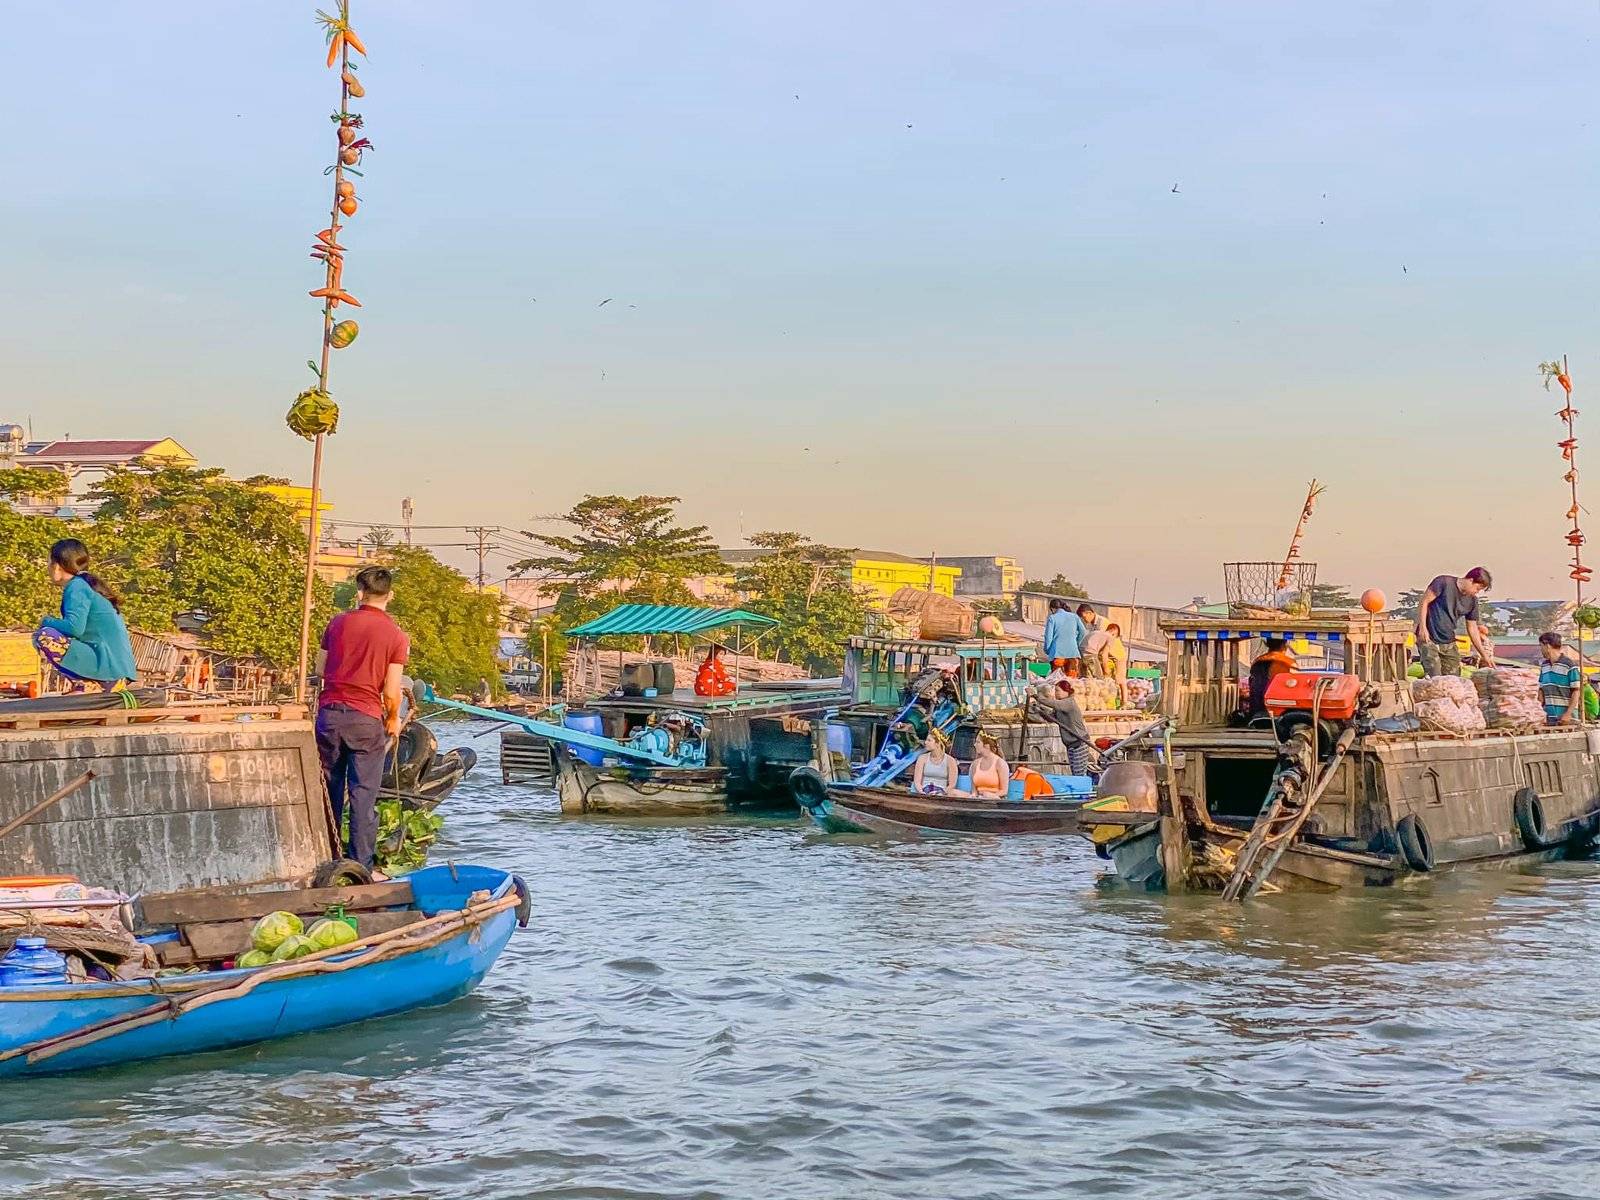 Il mercato galleggiante di Cai Rang 